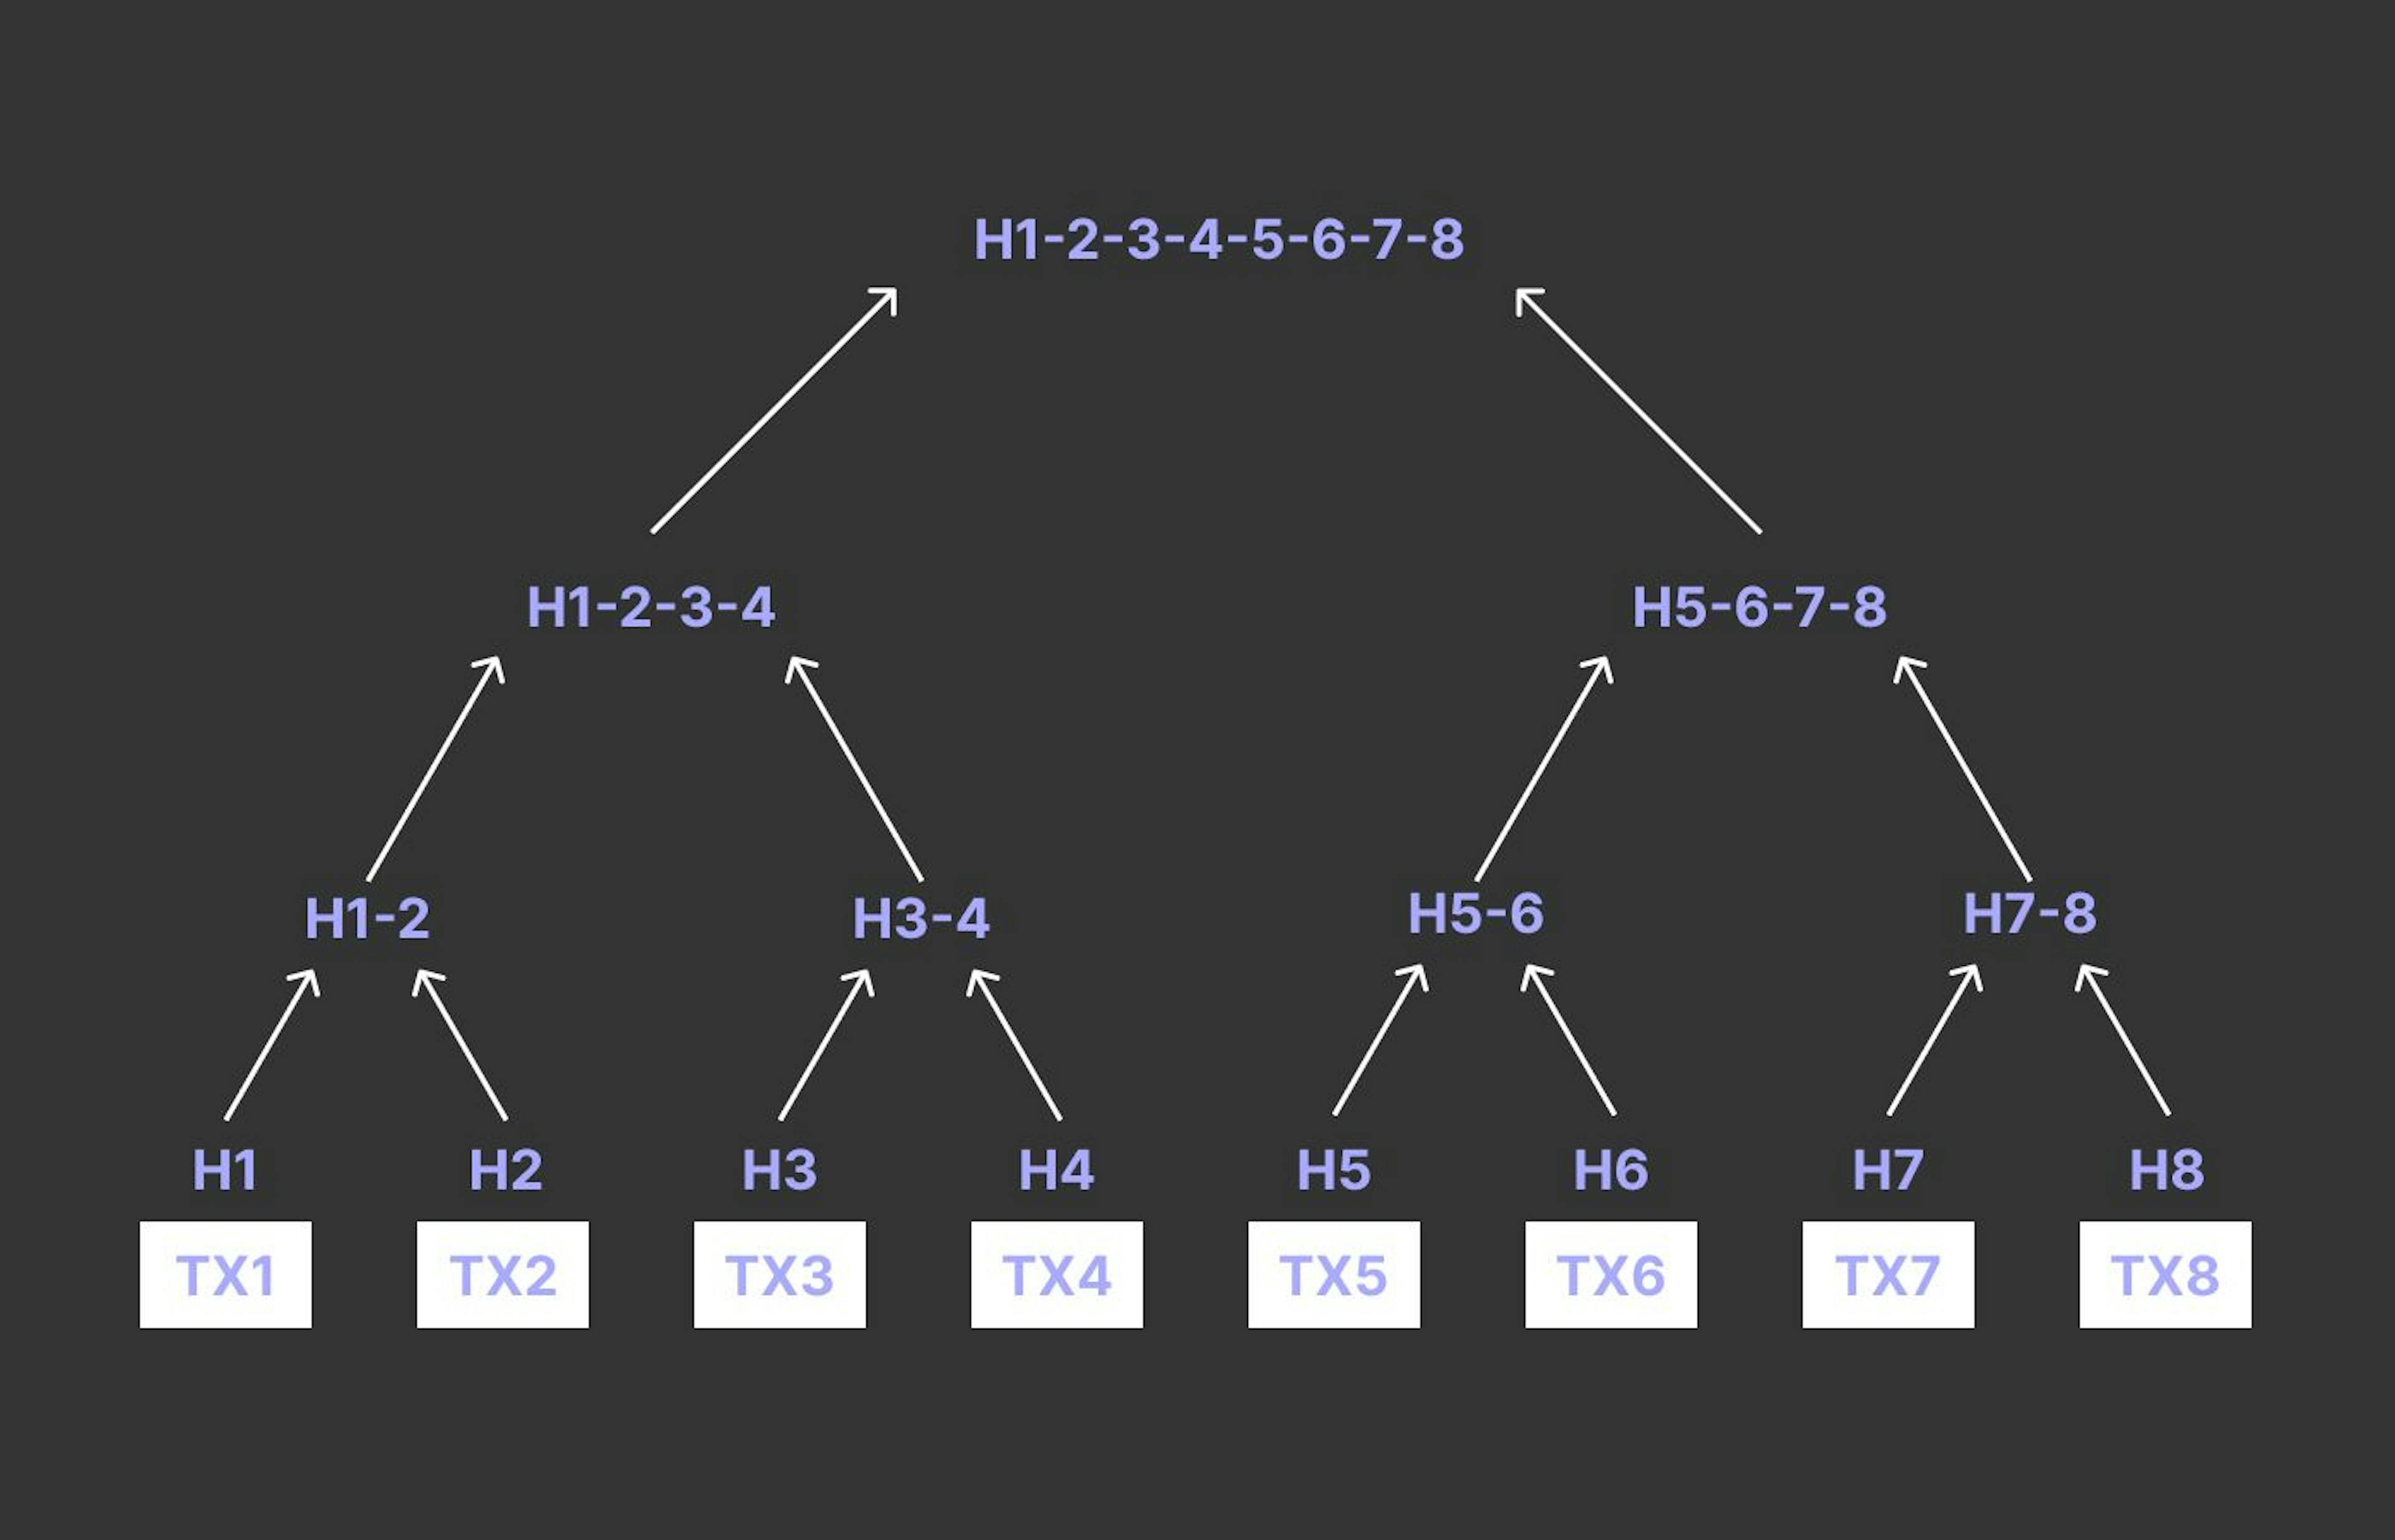 Merkle Tree basierend auf Transaktionen